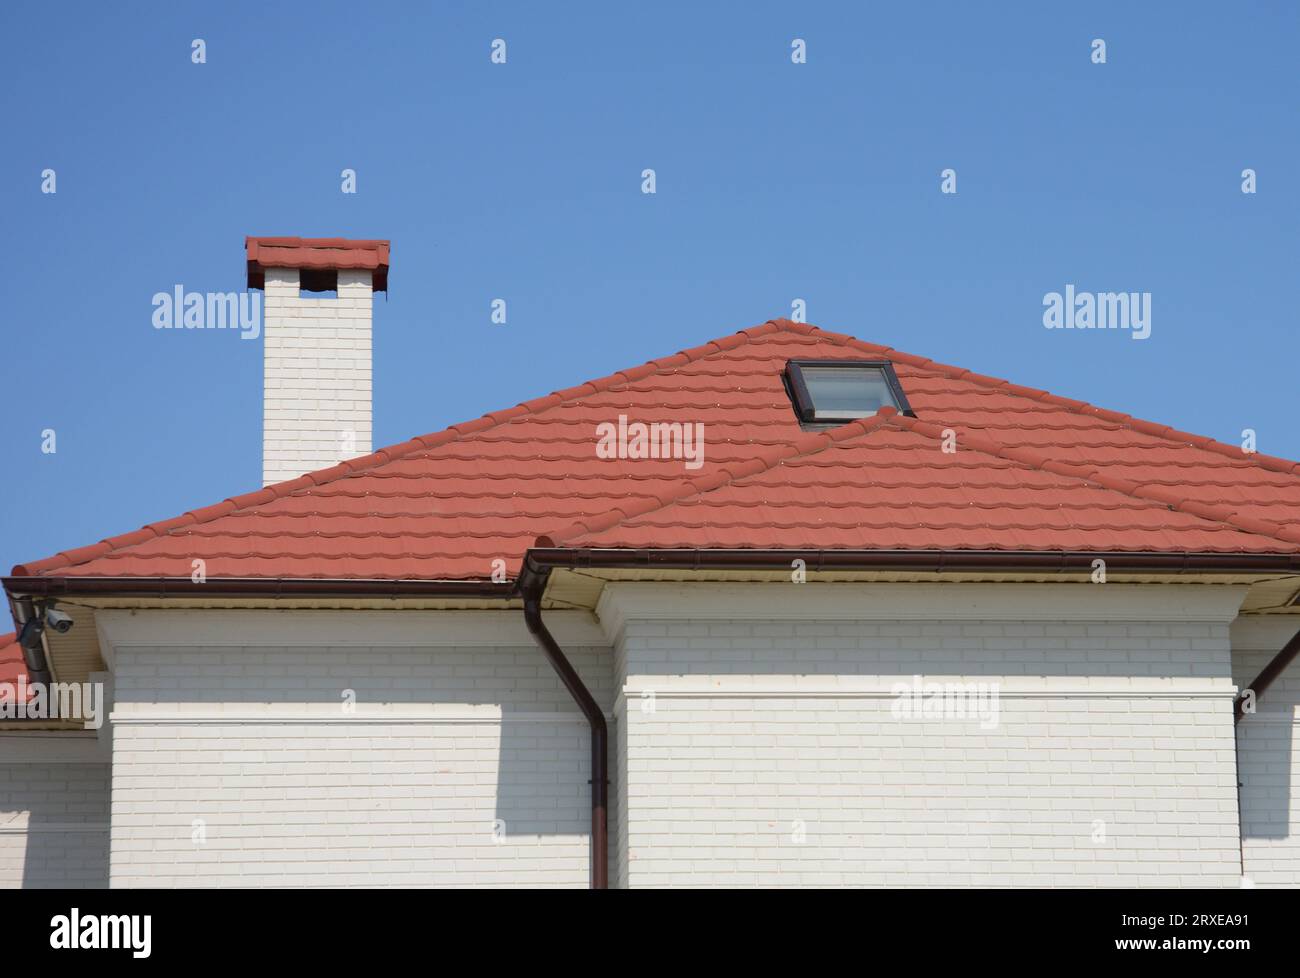 Das Dach des Hauses besteht aus roten Keramikfliesen mit Dachfenster, Regenrinne und weißen Backsteinfassaden. Stockfoto